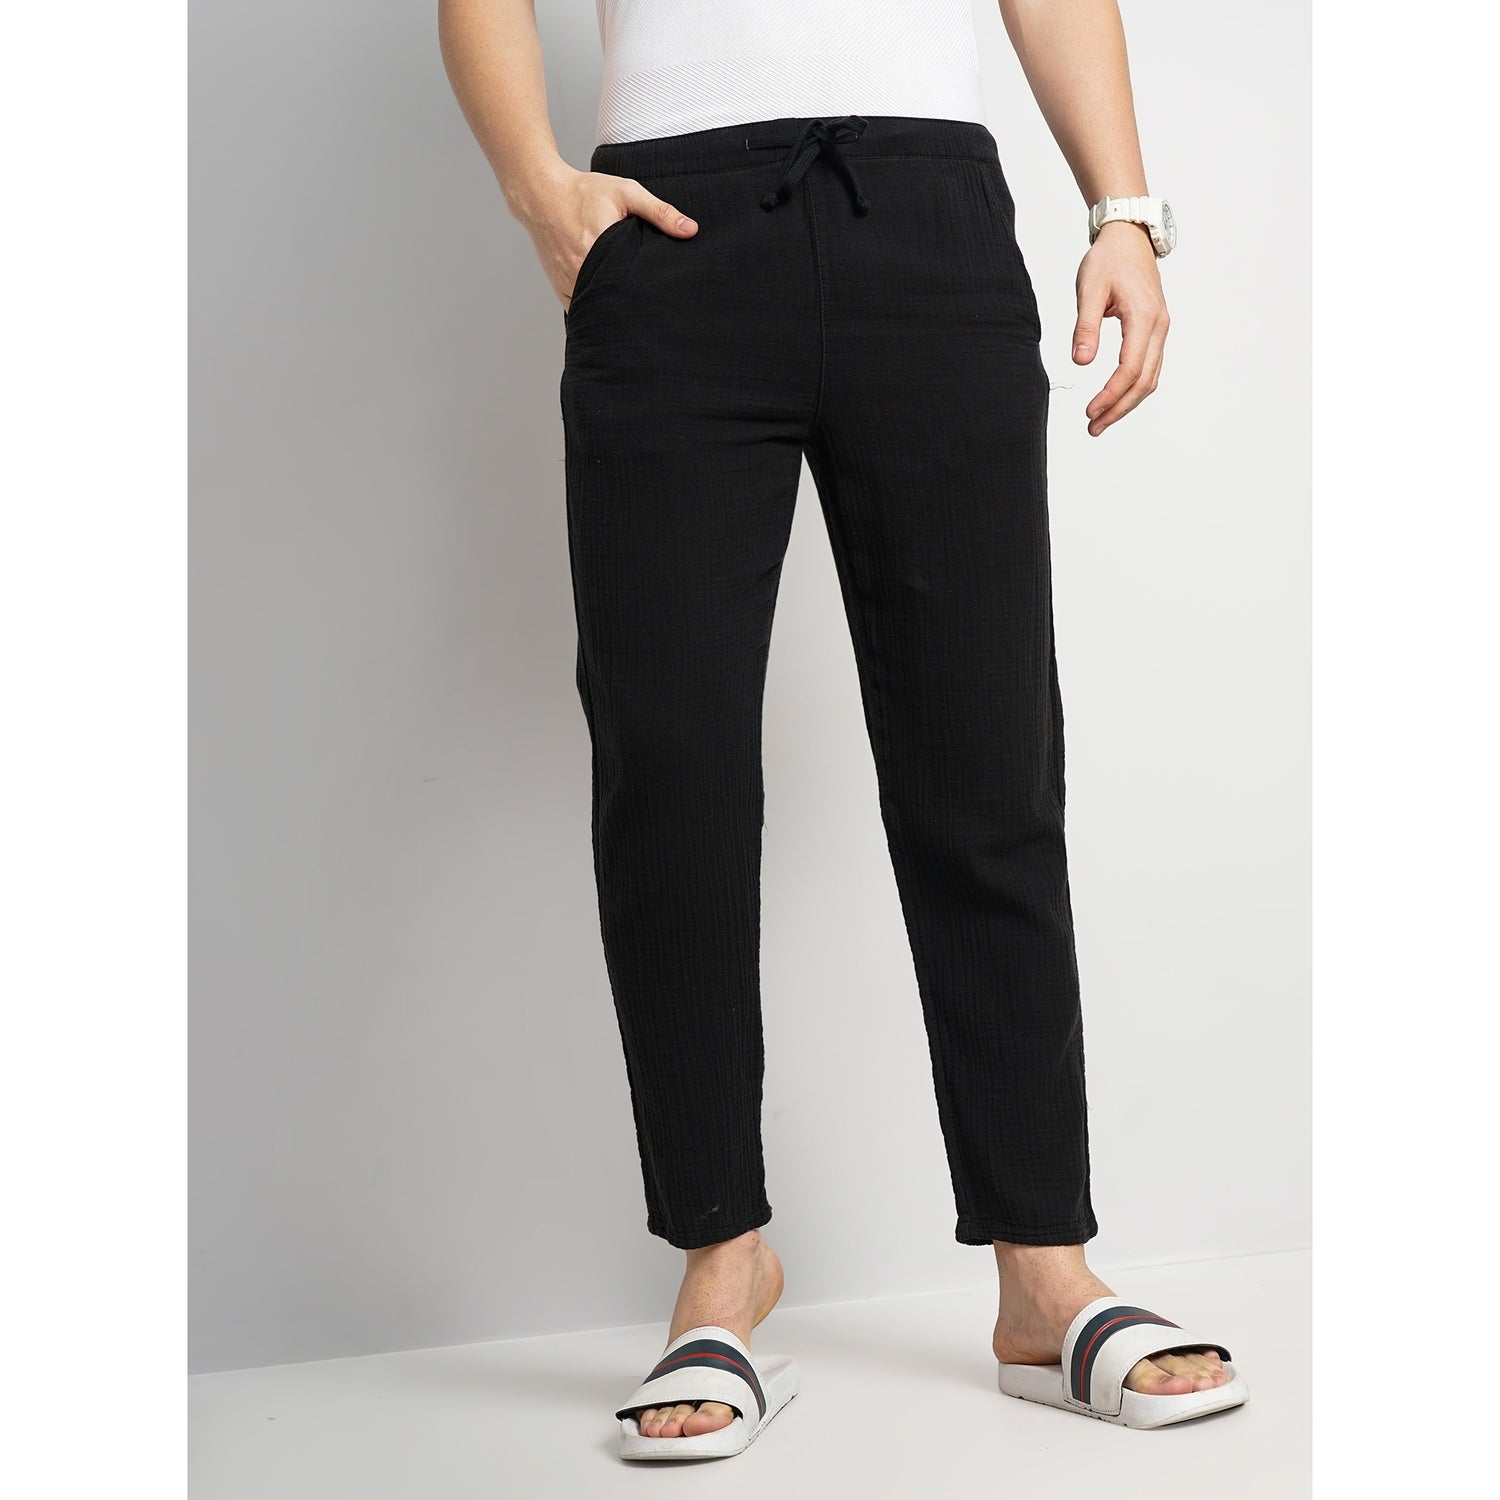 Men's Black Solid Regular Fit Cotton Fashion Trousers (GOBOGAZE)